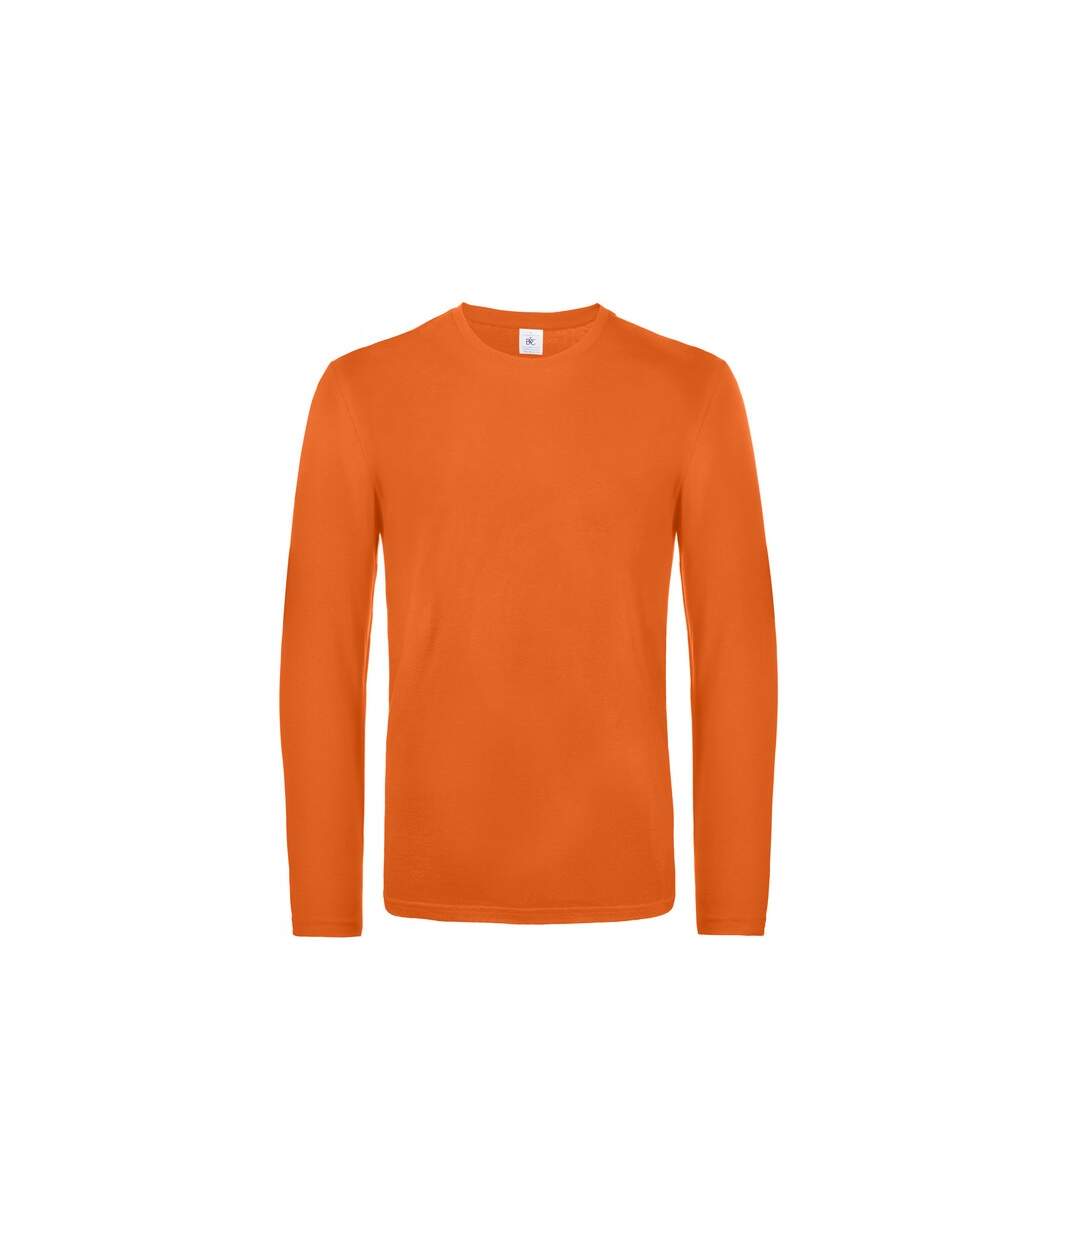 B&C - T-shirt #E190 - Homme (Orange) - UTRW6530